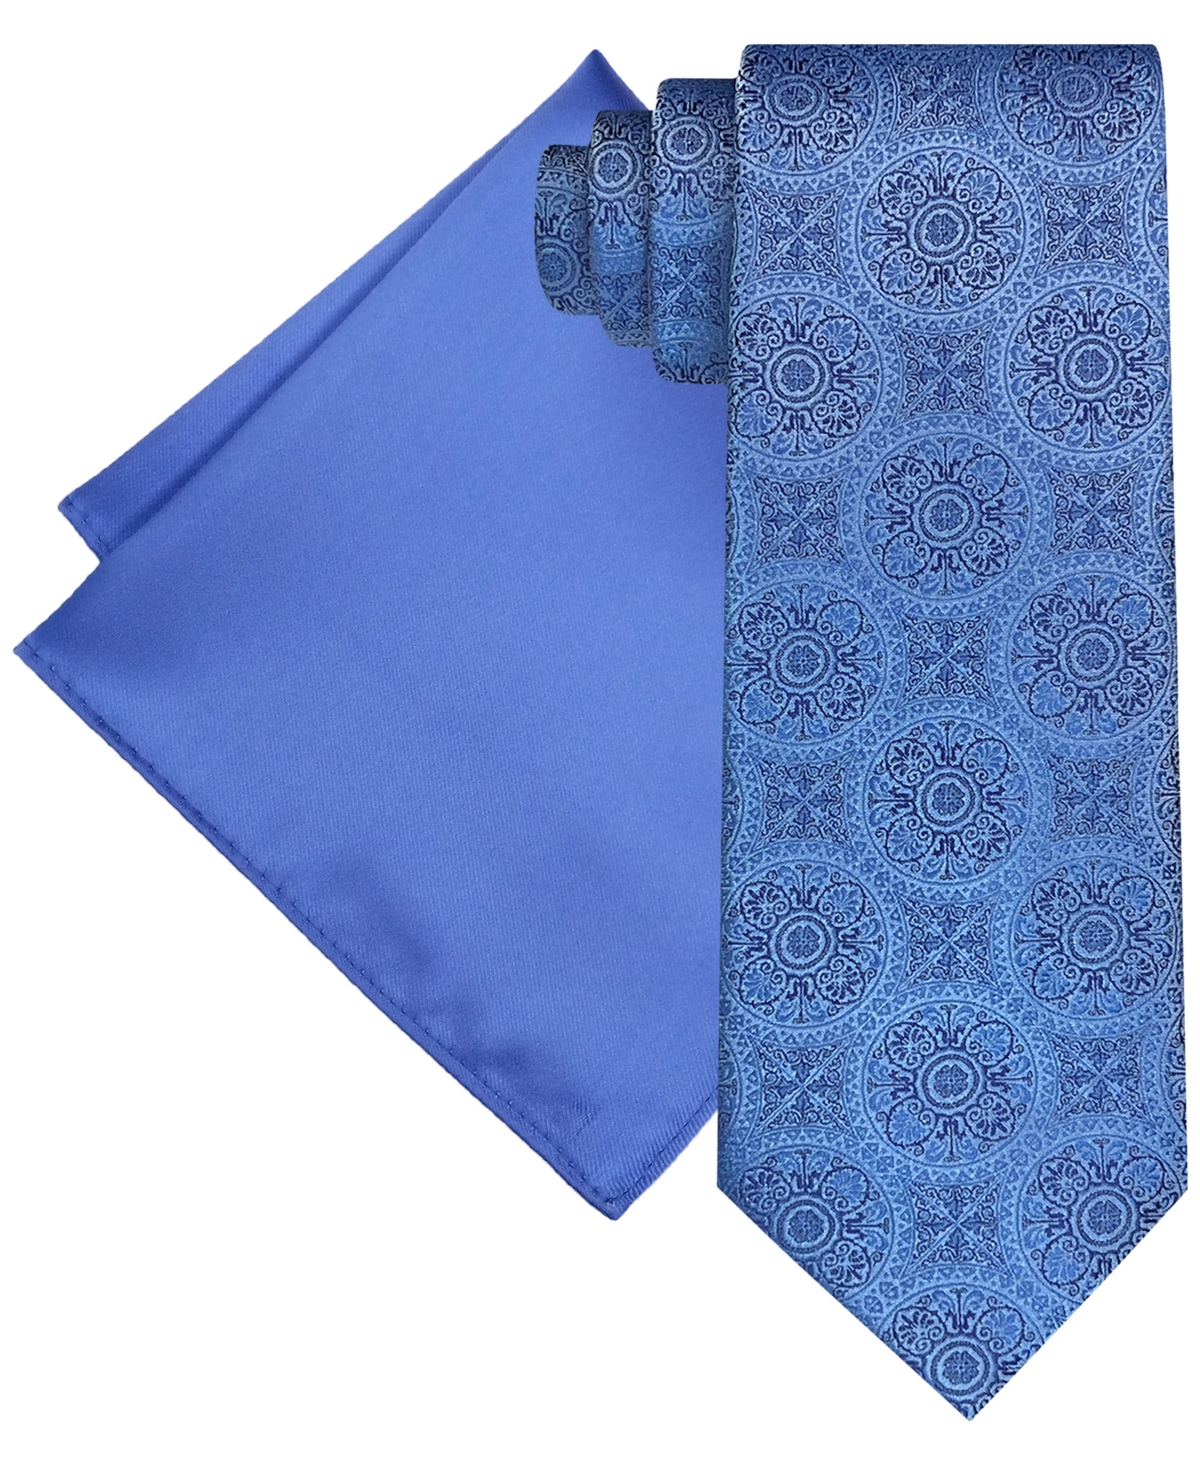 Men's Ornate Medallion Tie & Solid Pocket Square Set - Lilac